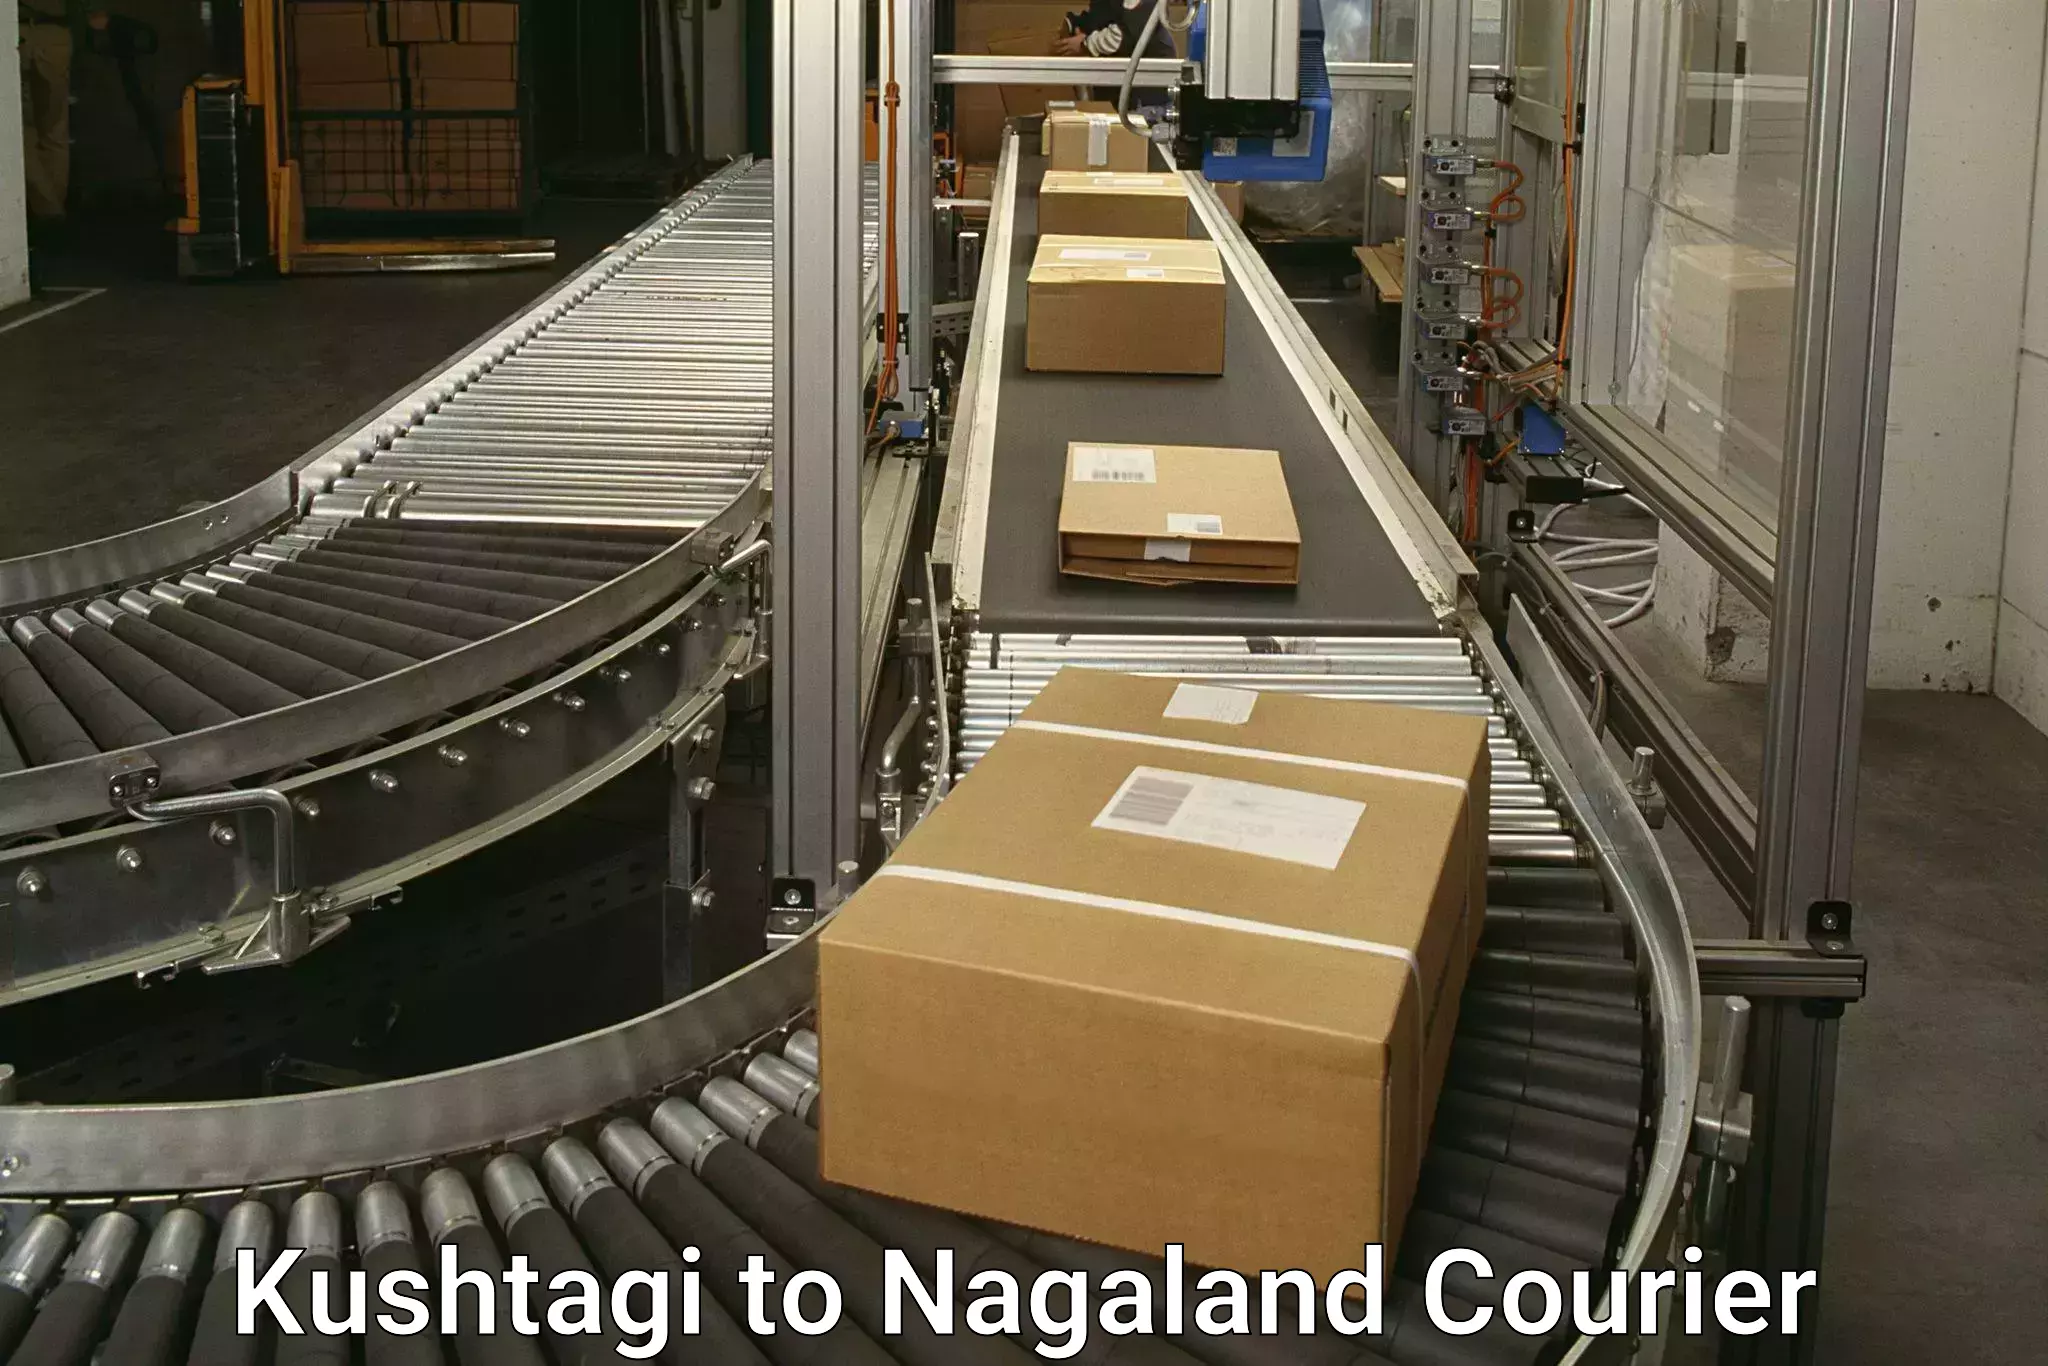 Full-service courier options Kushtagi to Nagaland